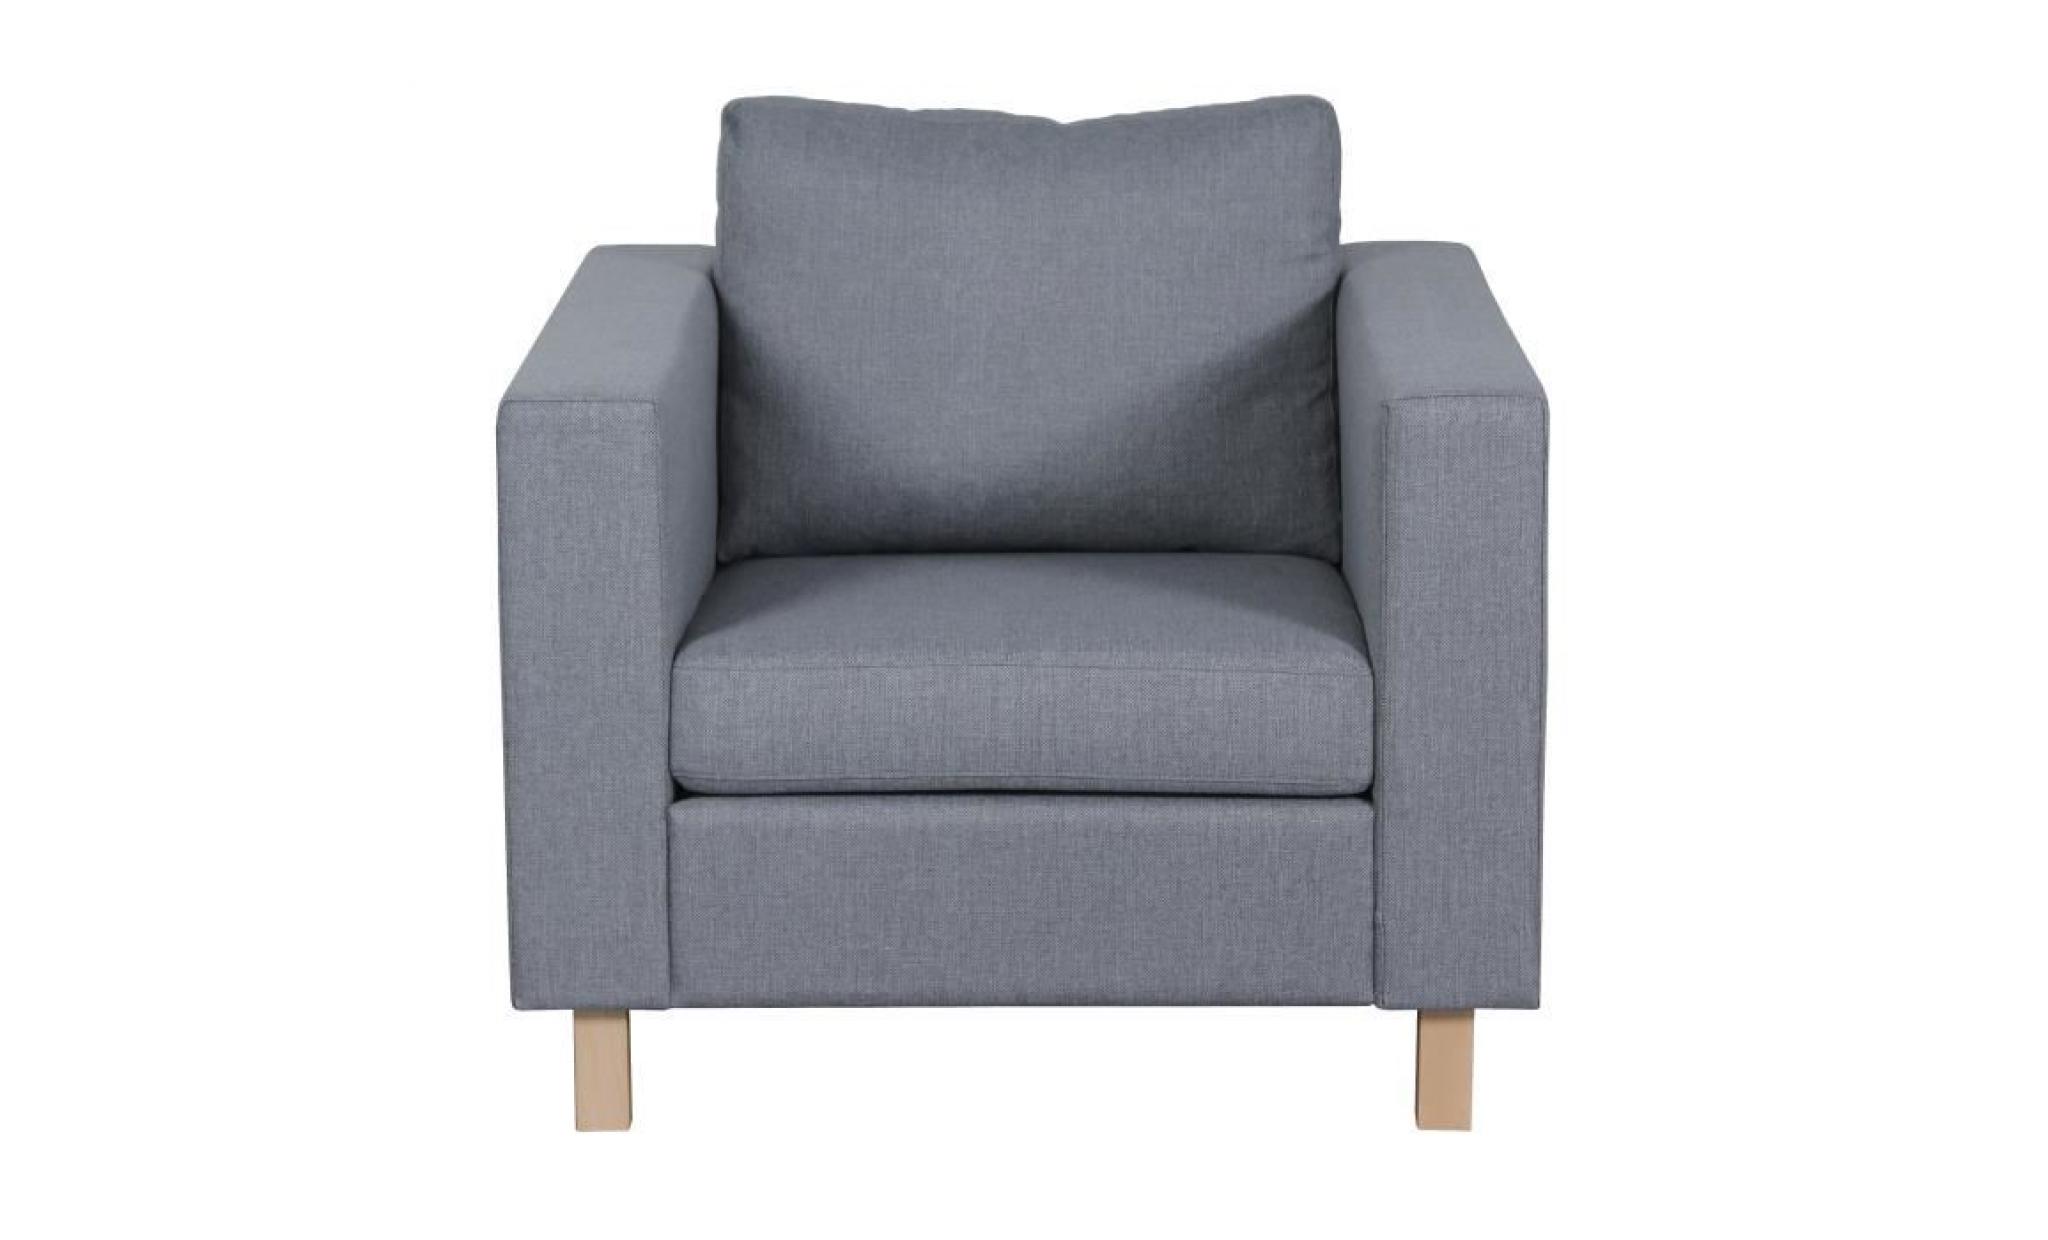 finlandek fauteuil sven   tissu gris clair   scandinave   l 92 x p 92 cm